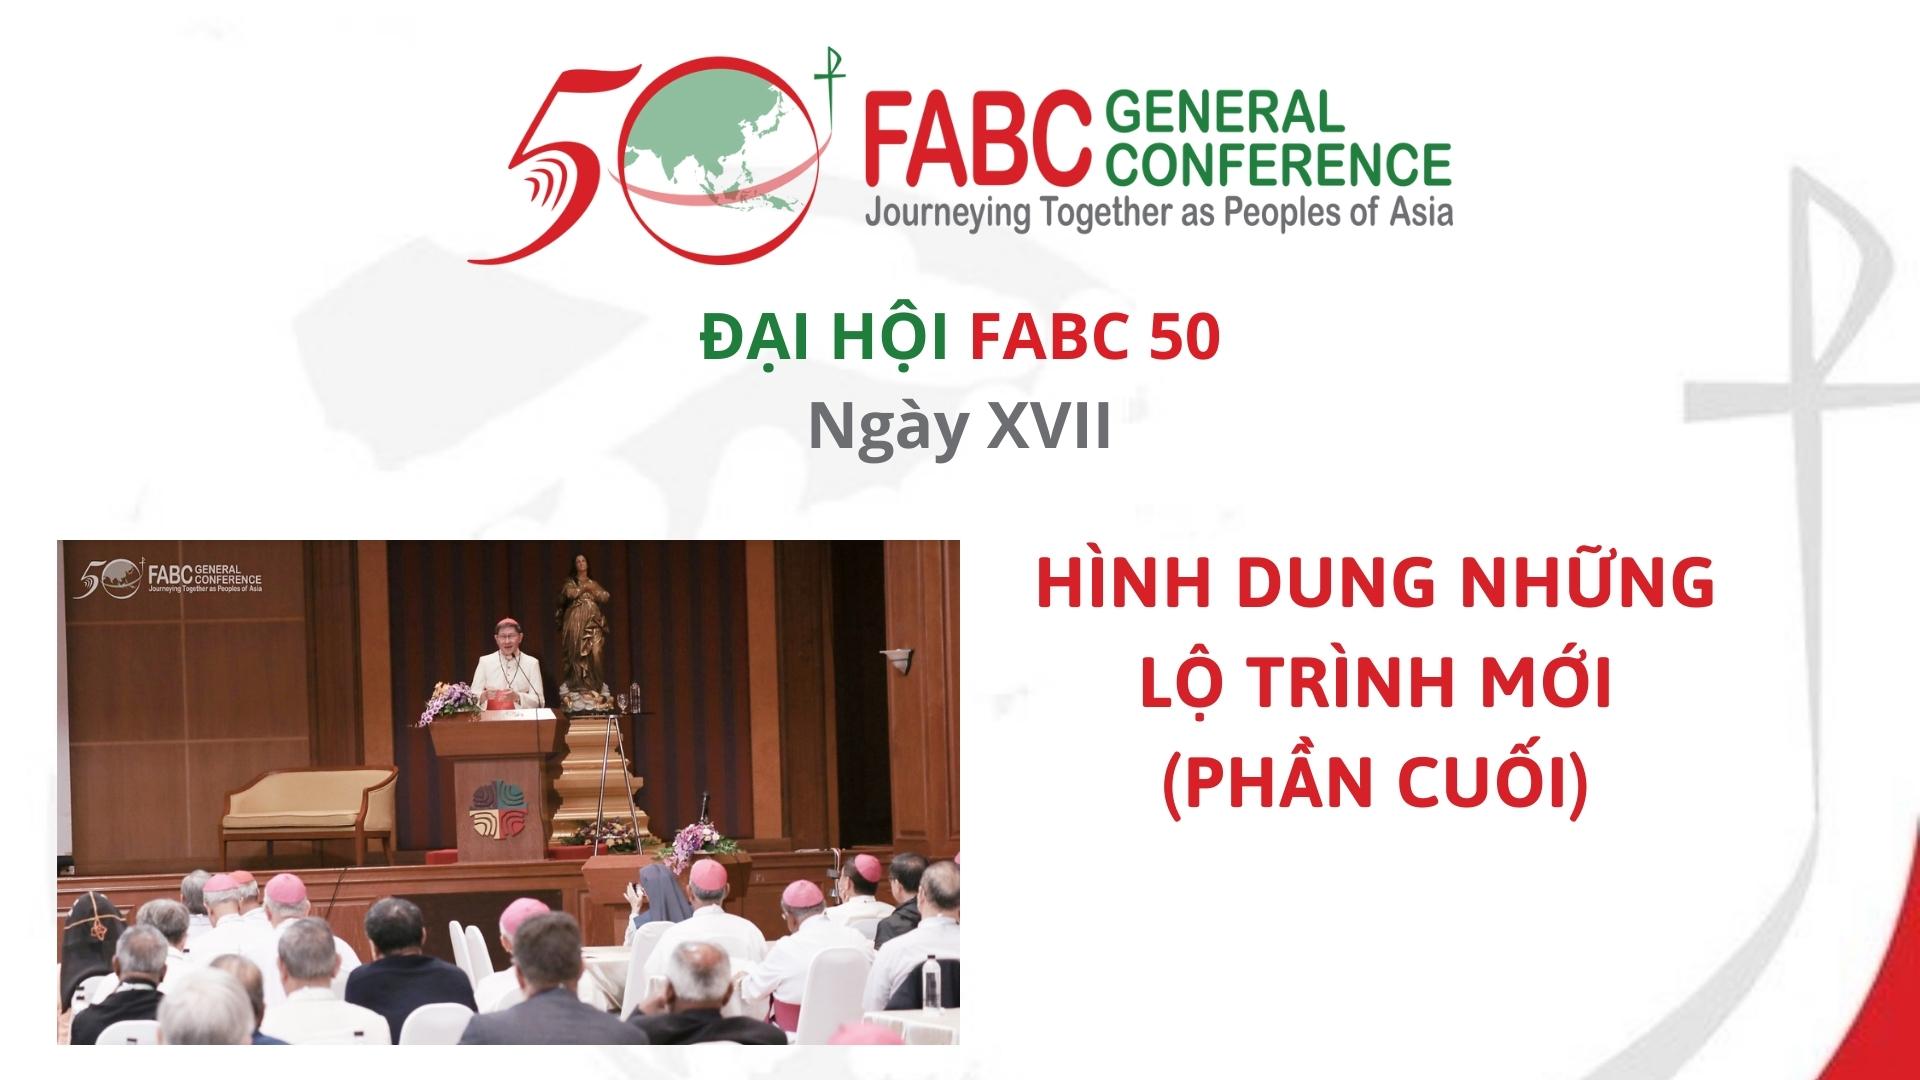 Đại hội FABC 50 - Ngày XVII - Hình dung những lộ trình mới (phần cuối)